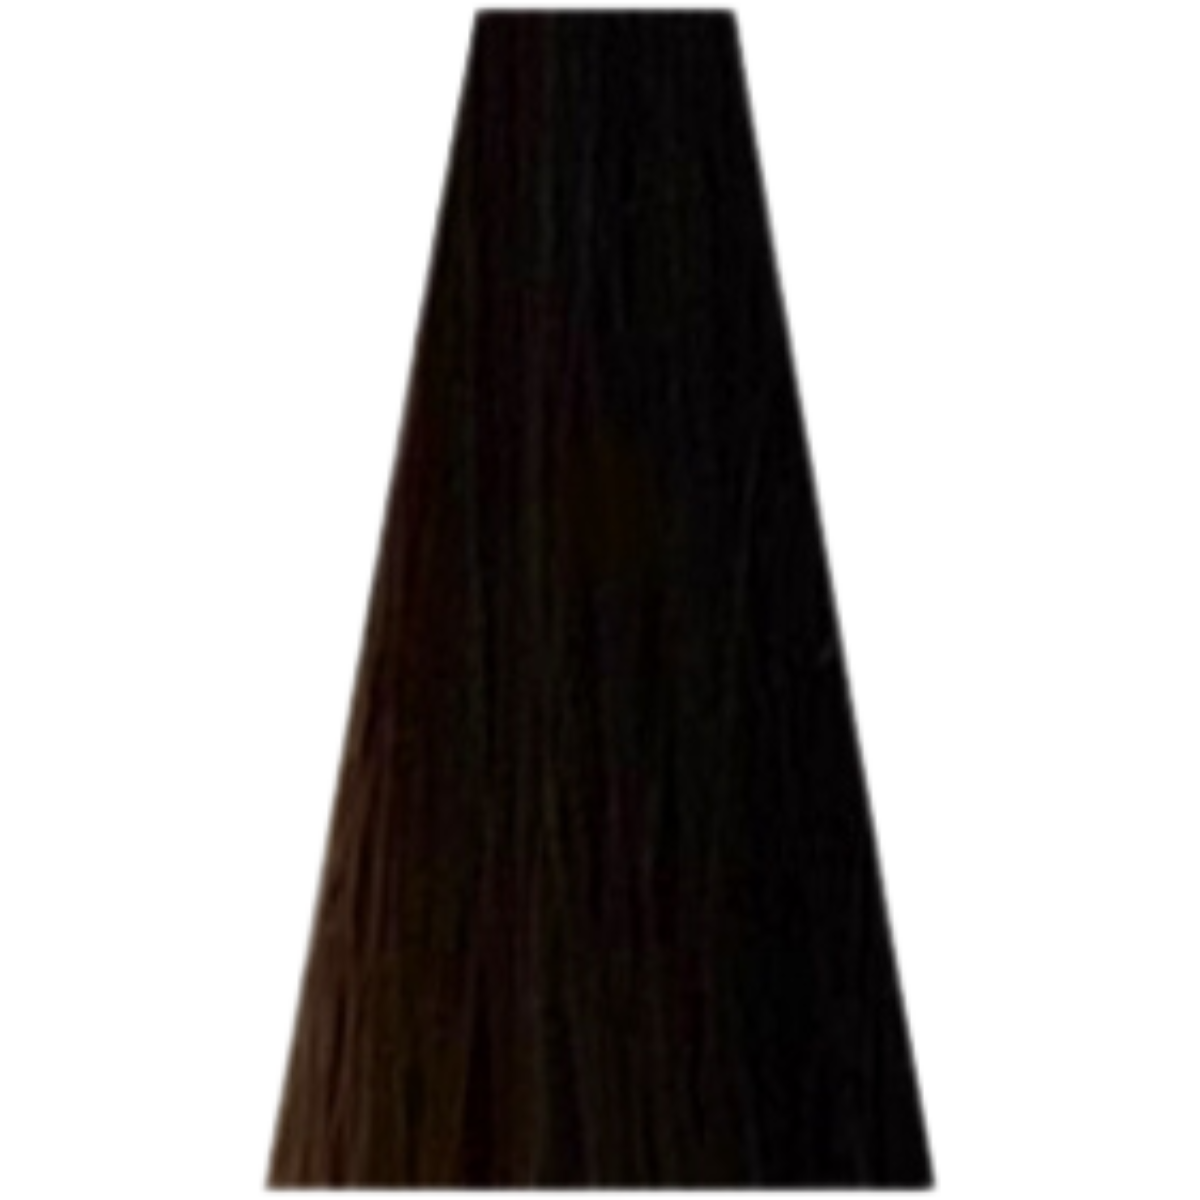 צבע שיער 6.23 COOL BROWNS דיה רישס לוריאל DIA RICHESSE LOREAL צבע שטיפה לשיער